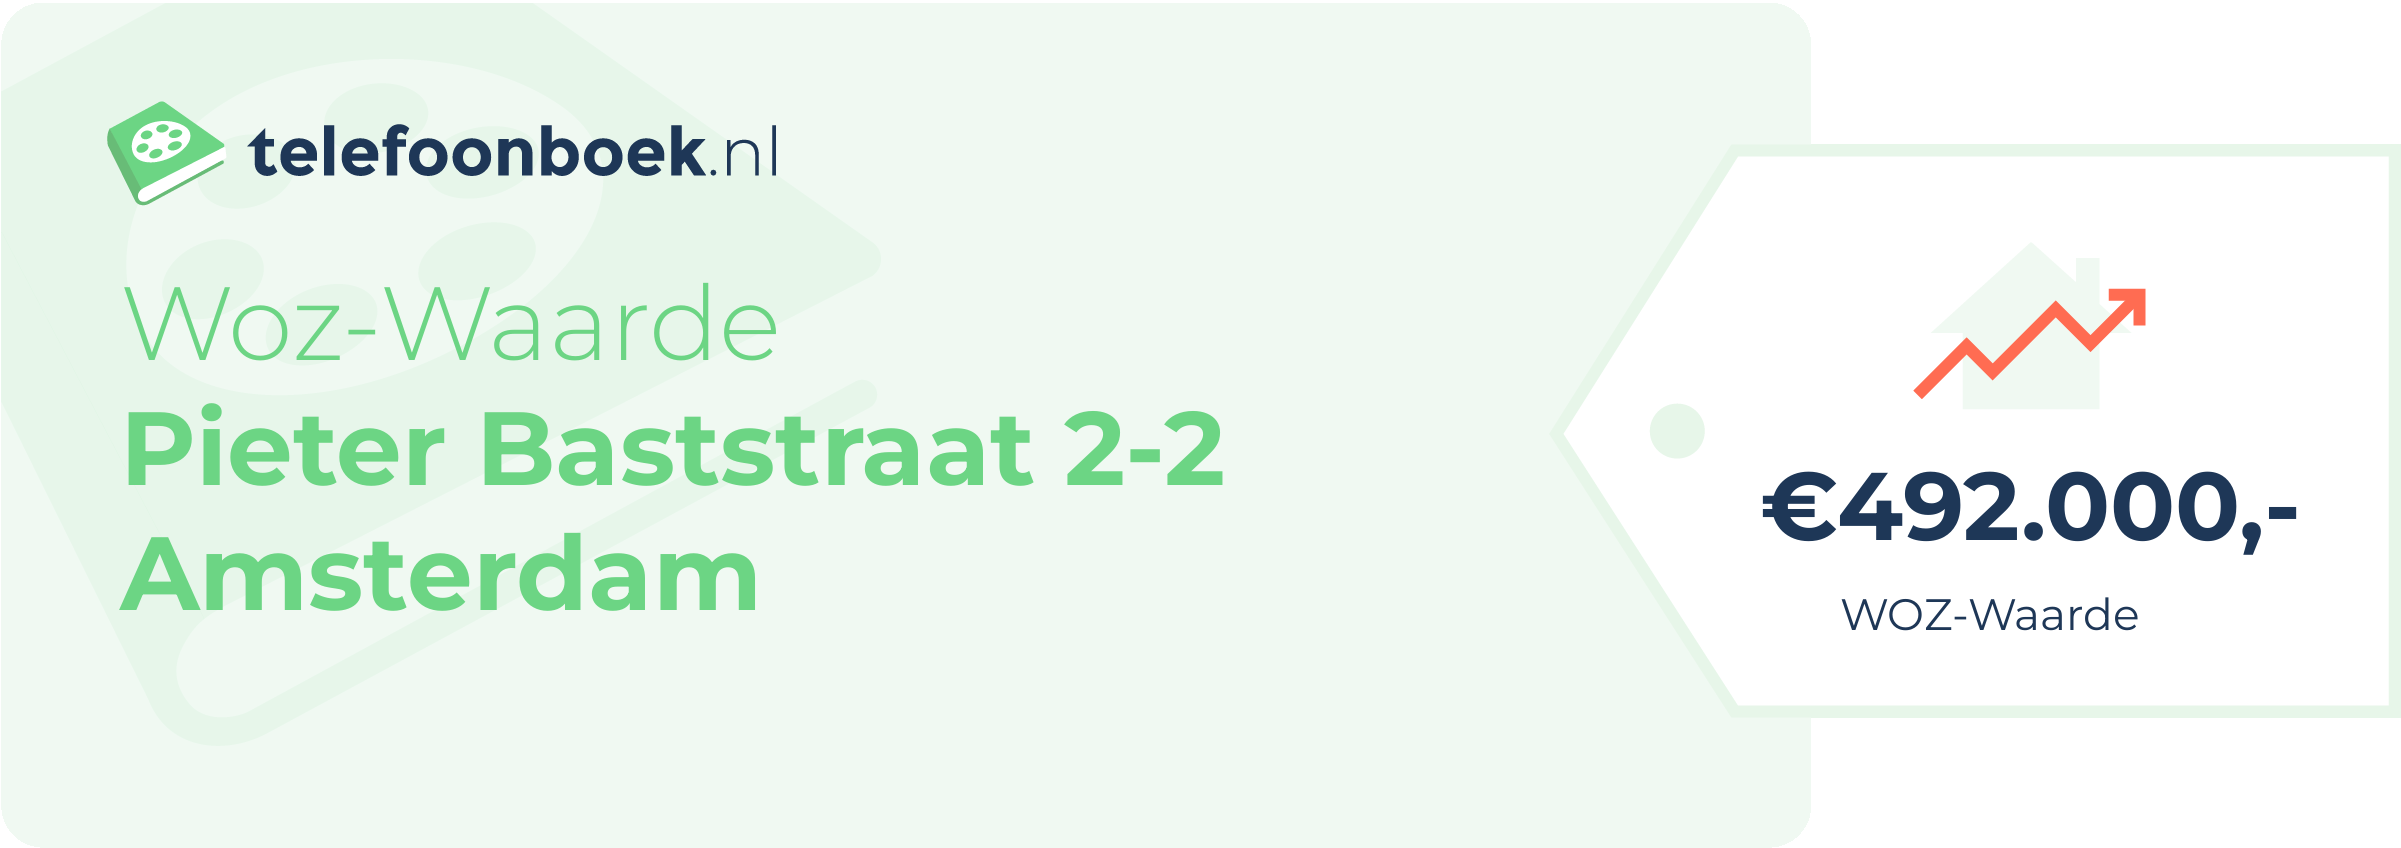 WOZ-waarde Pieter Baststraat 2-2 Amsterdam